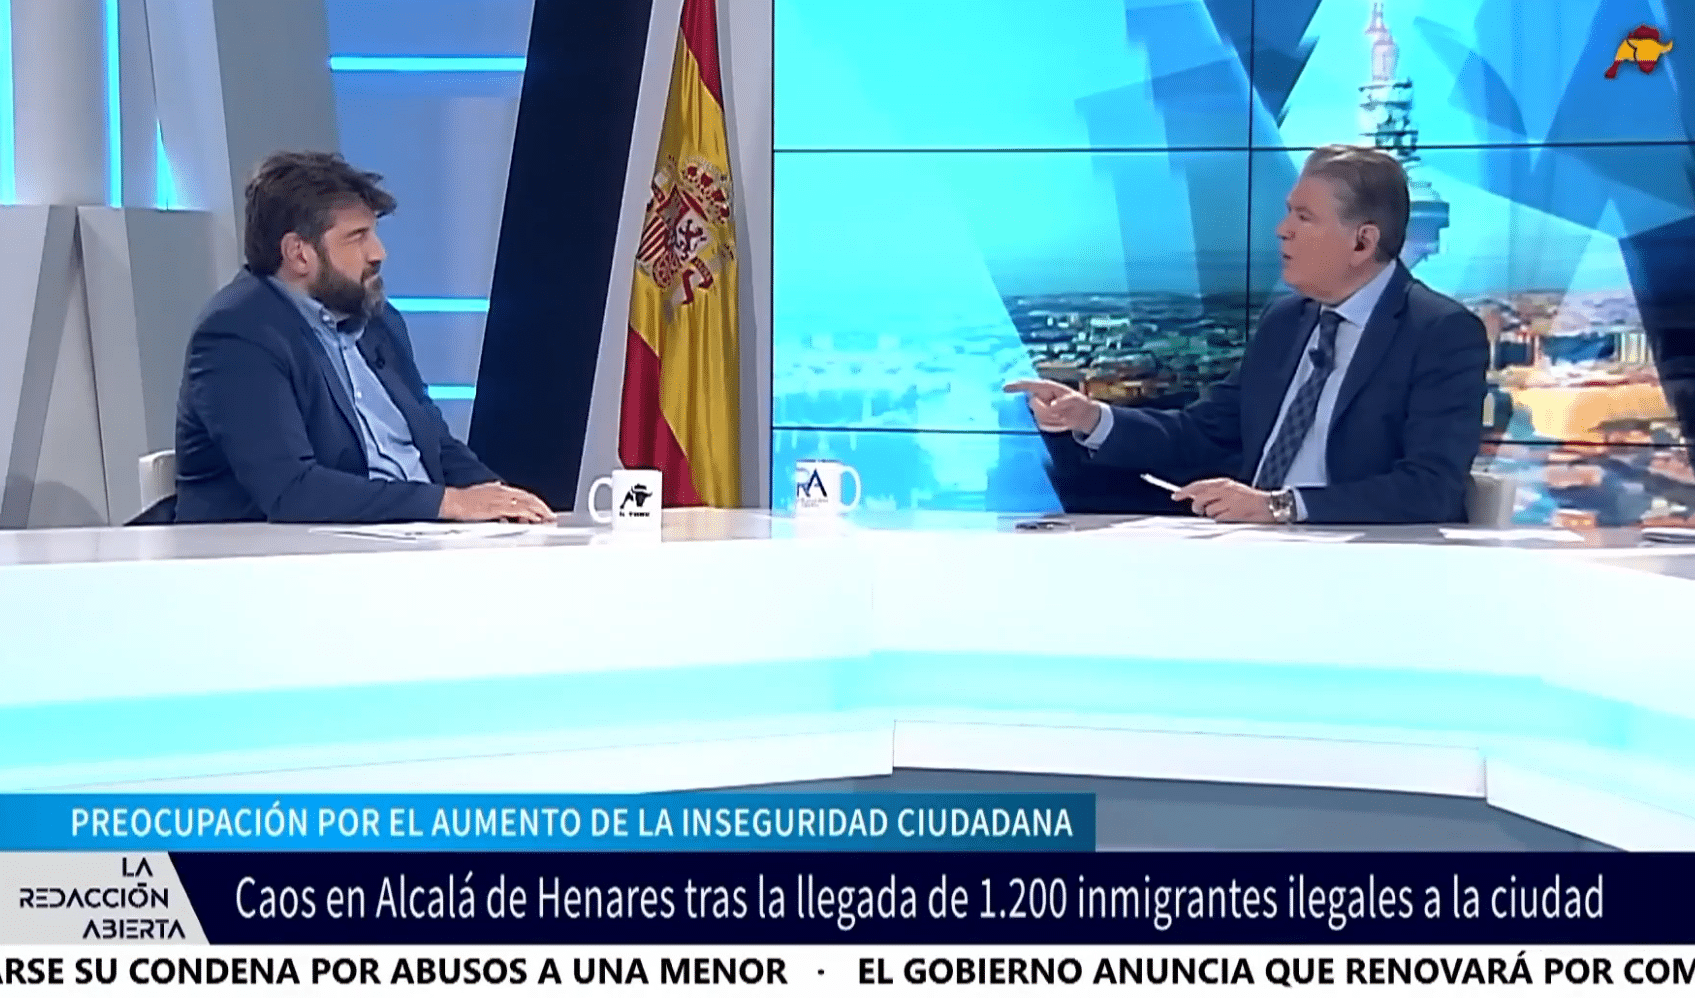 Caos en Alcalá de Henares por la llegada de inmigrantes ilegales: «Crece la sensación de inseguridad»